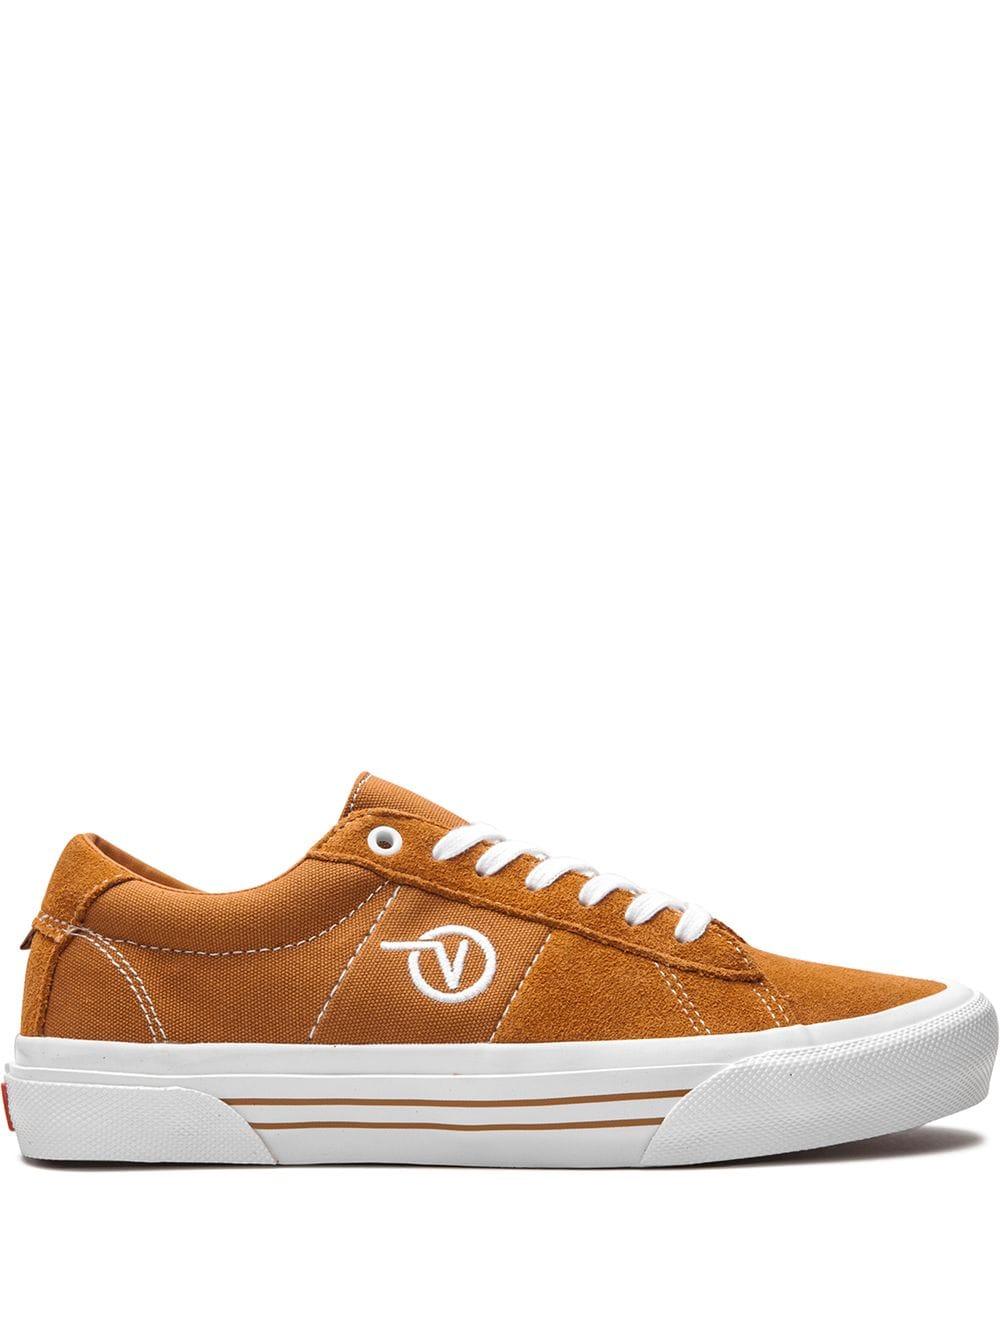 Vans Skate Sid "Pumpkin/White" sneakers - Brown von Vans